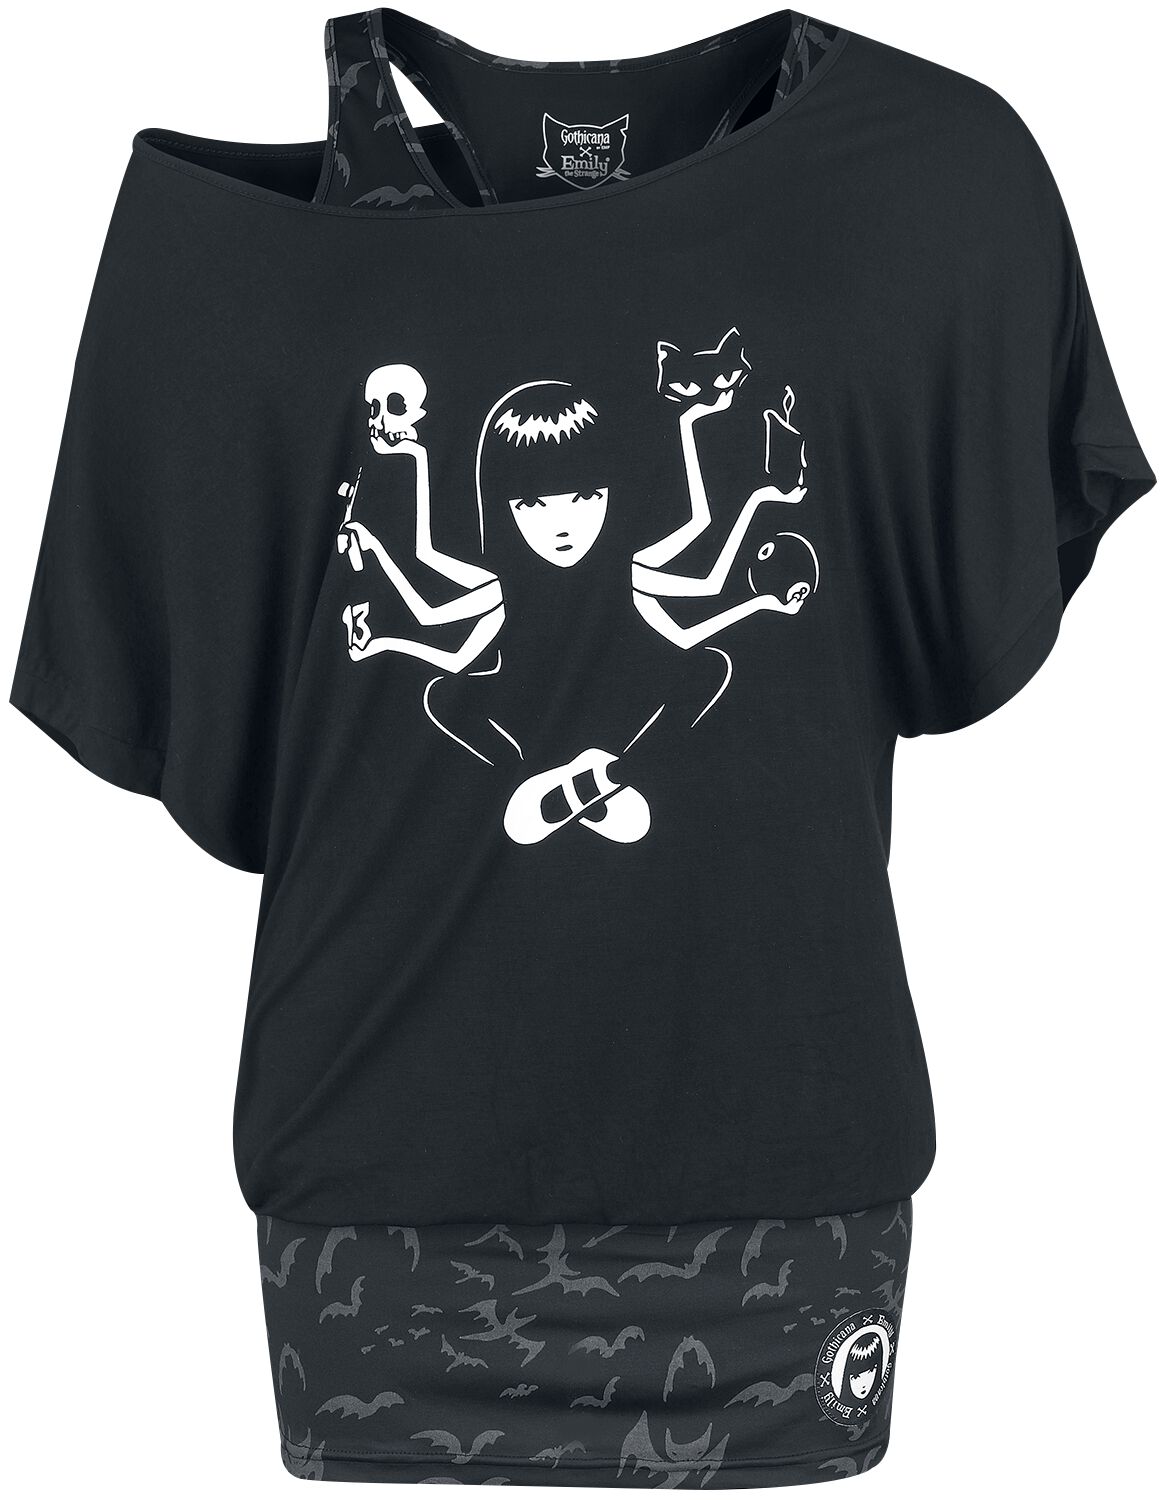 Gothicana by EMP - Gothic T-Shirt - Gothicana X Emily The Strange 2in1 T-Shirt and Top - S bis XL - für Damen - Größe XL - schwarz